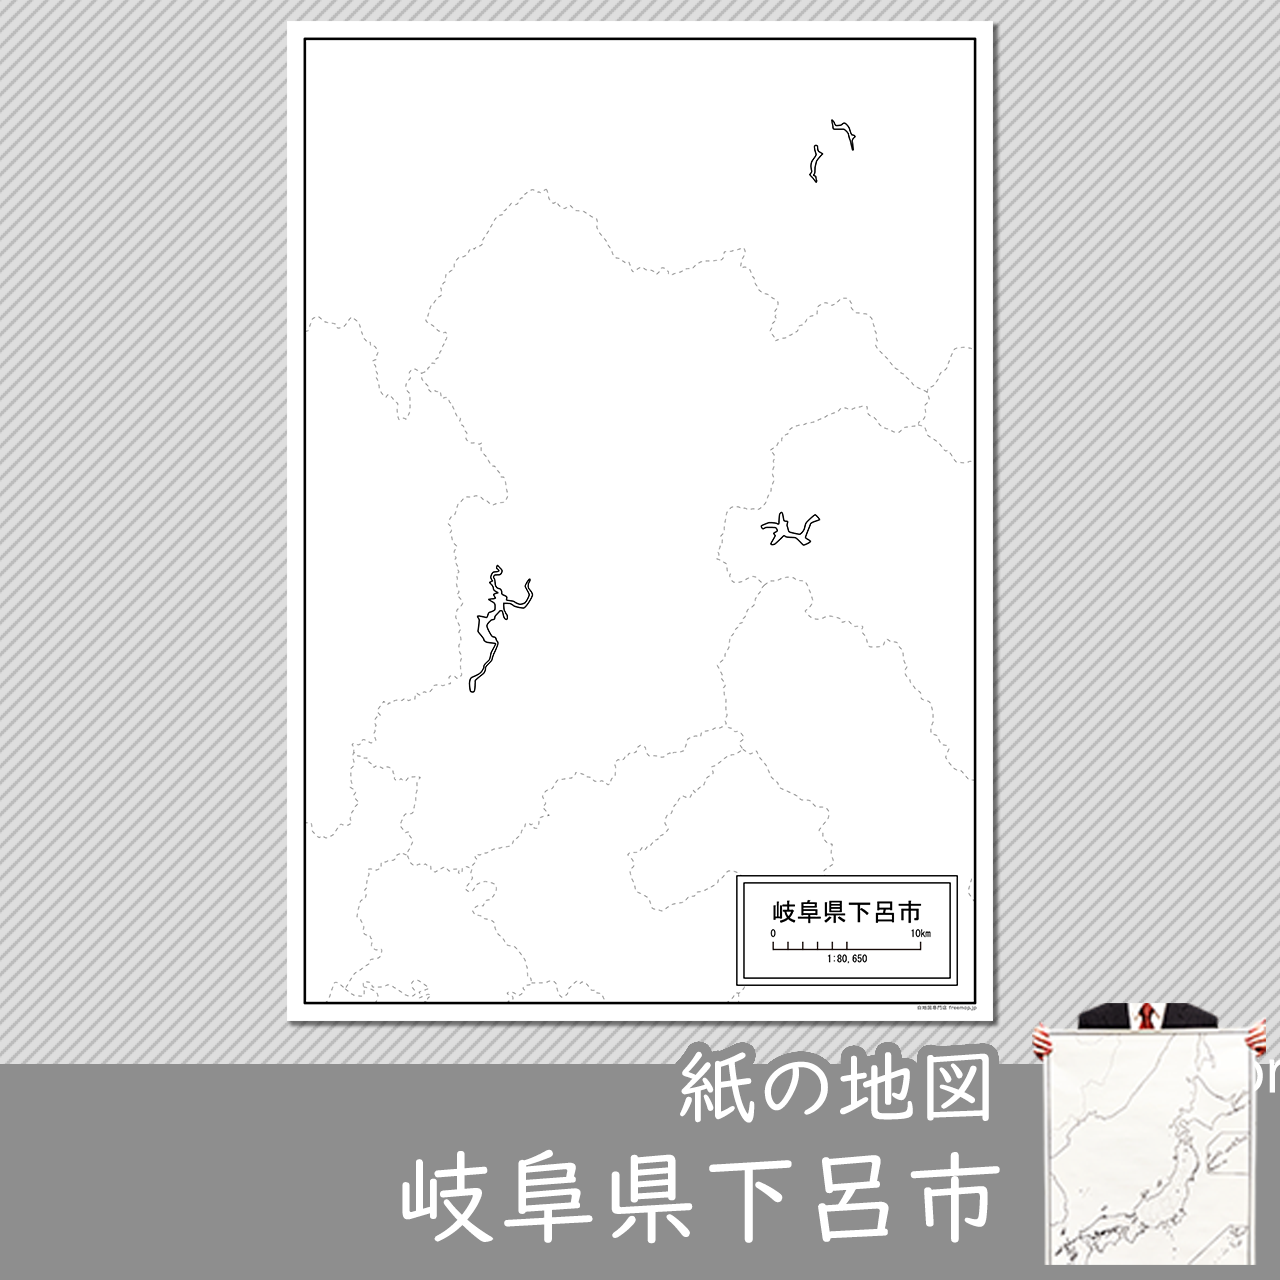 下呂市の紙の白地図のサムネイル